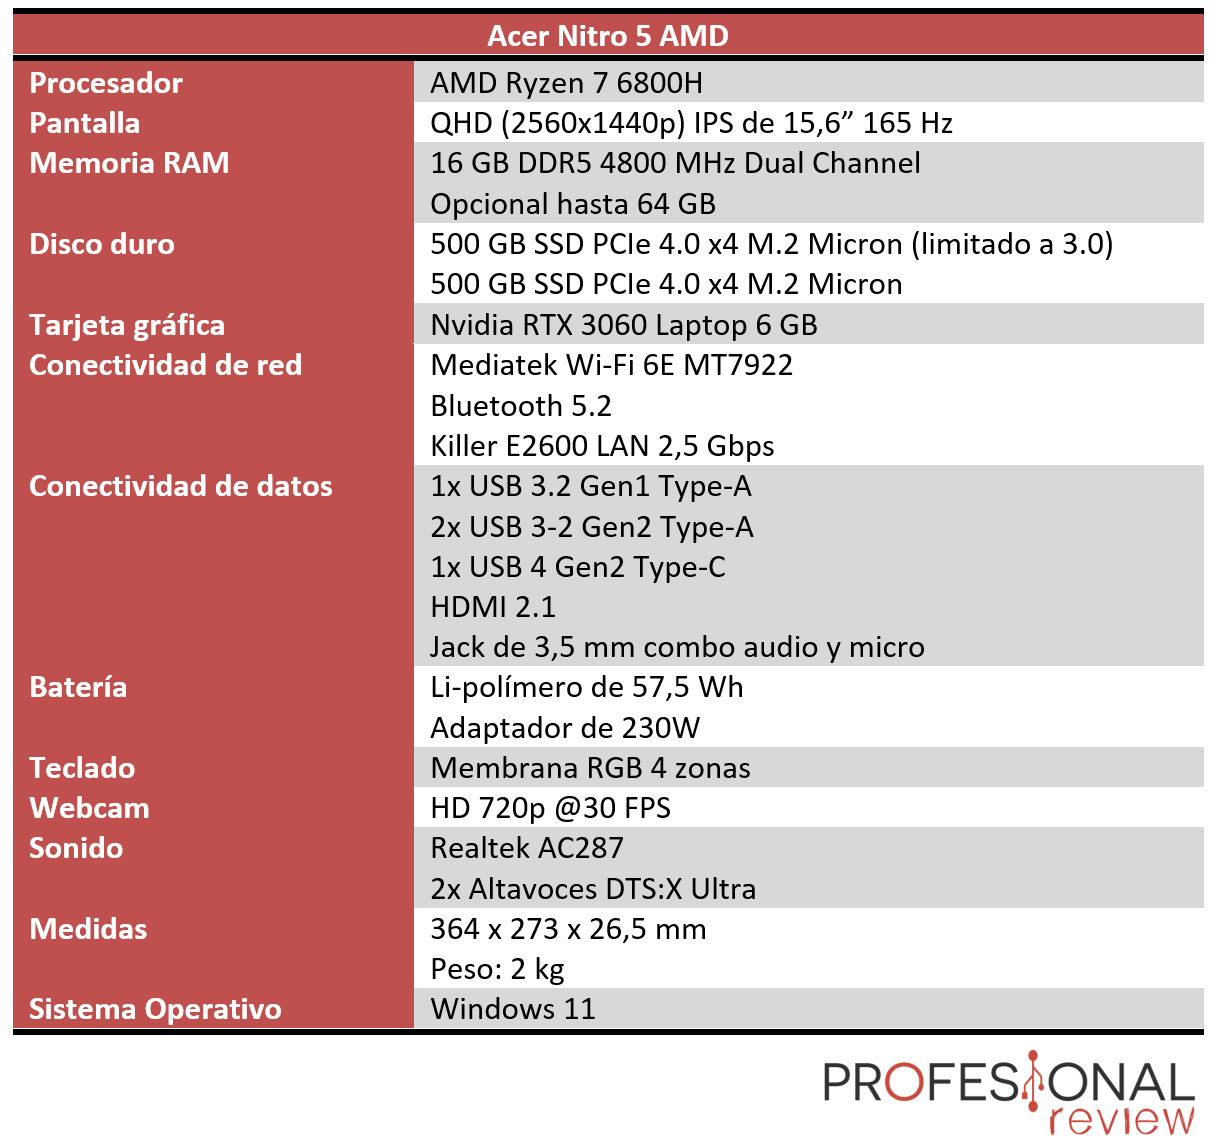 Acer Nitro 5 AMD Características